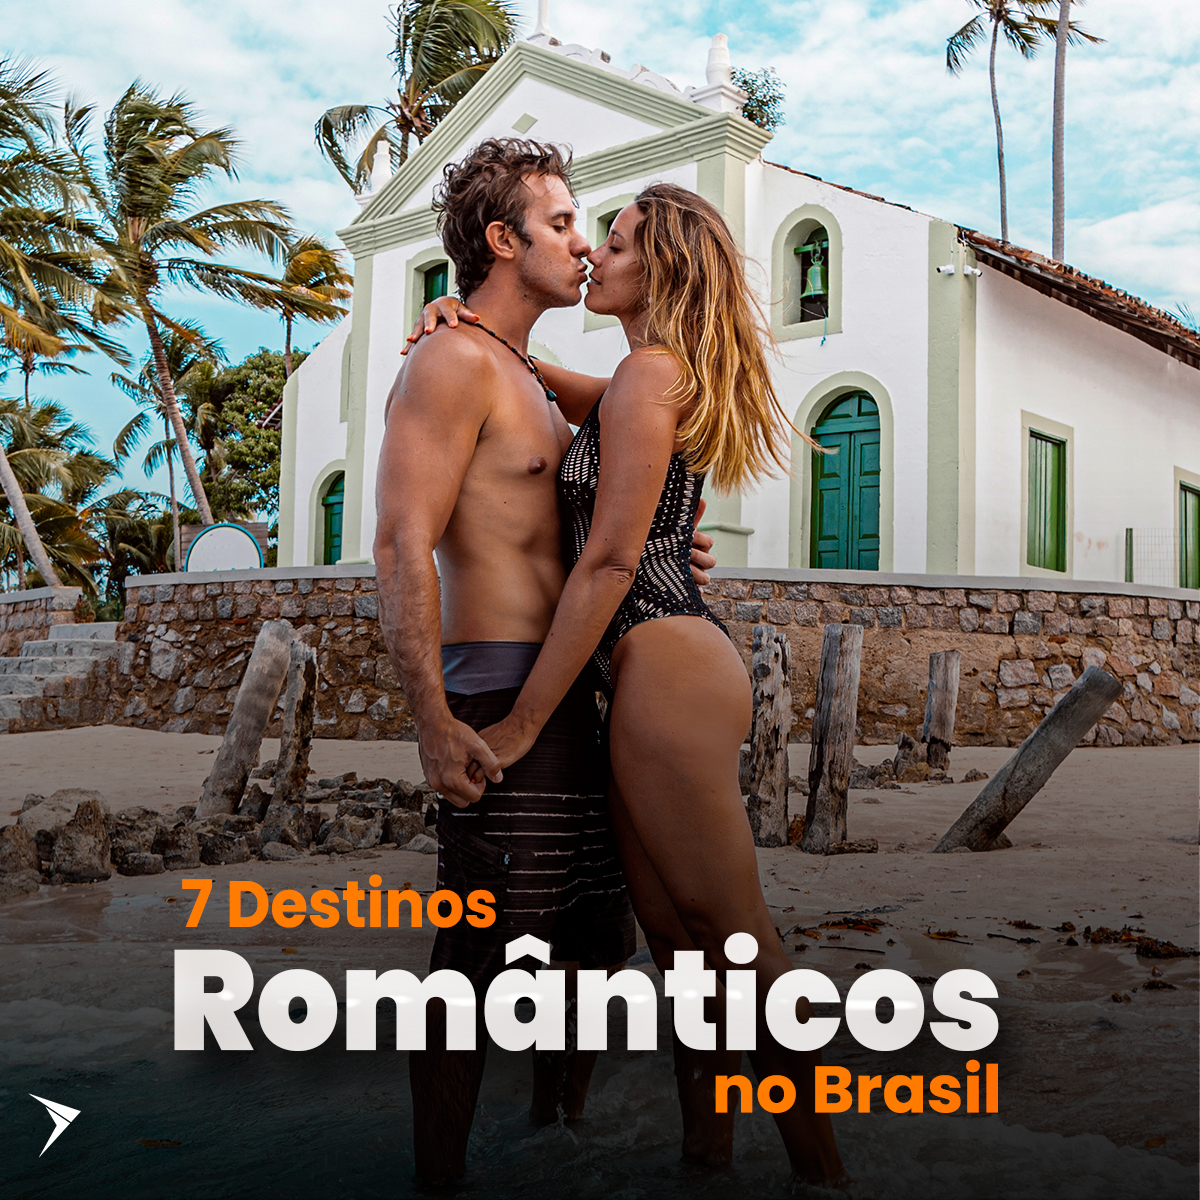 7 Lugares destinos românticos para viajar no Brasil